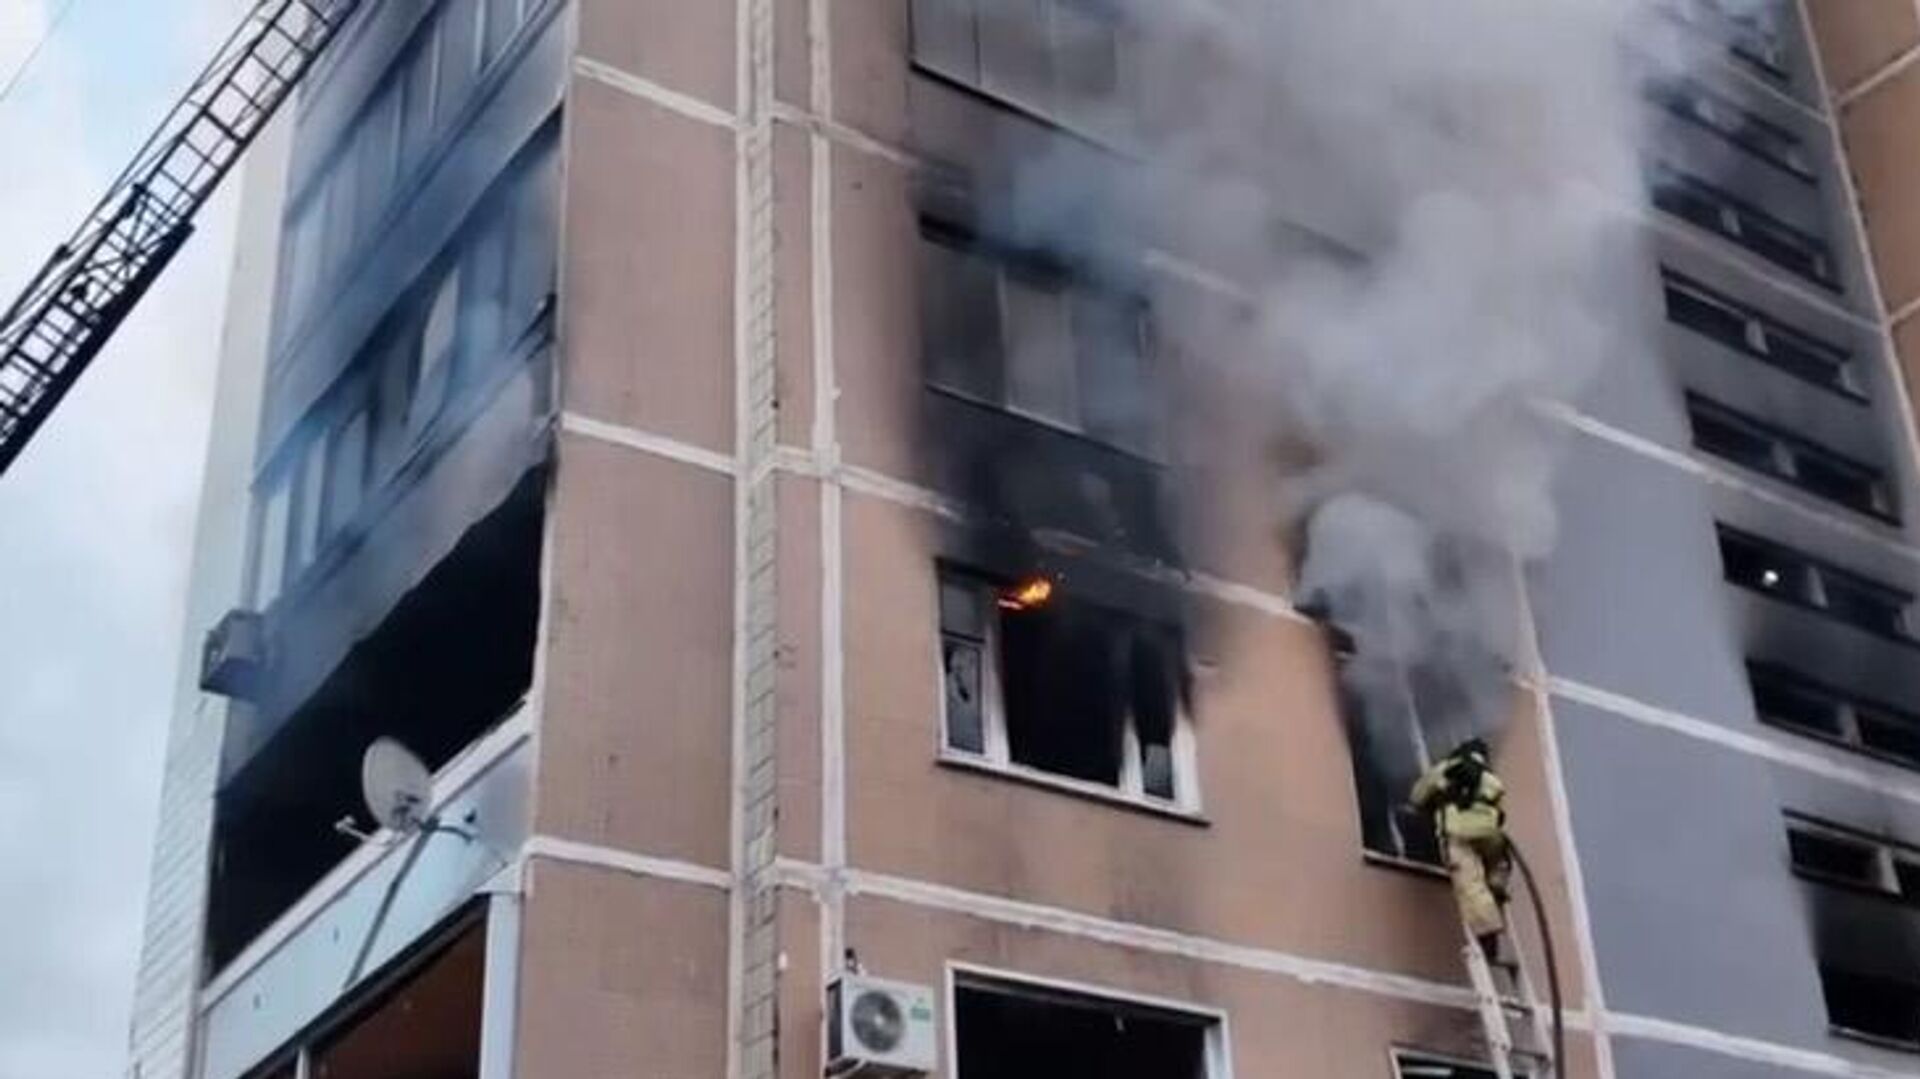 Ребенок погиб и 3 взрослых пострадали при пожаре в многоэтажном доме в Ульяновске - МЧС РФ